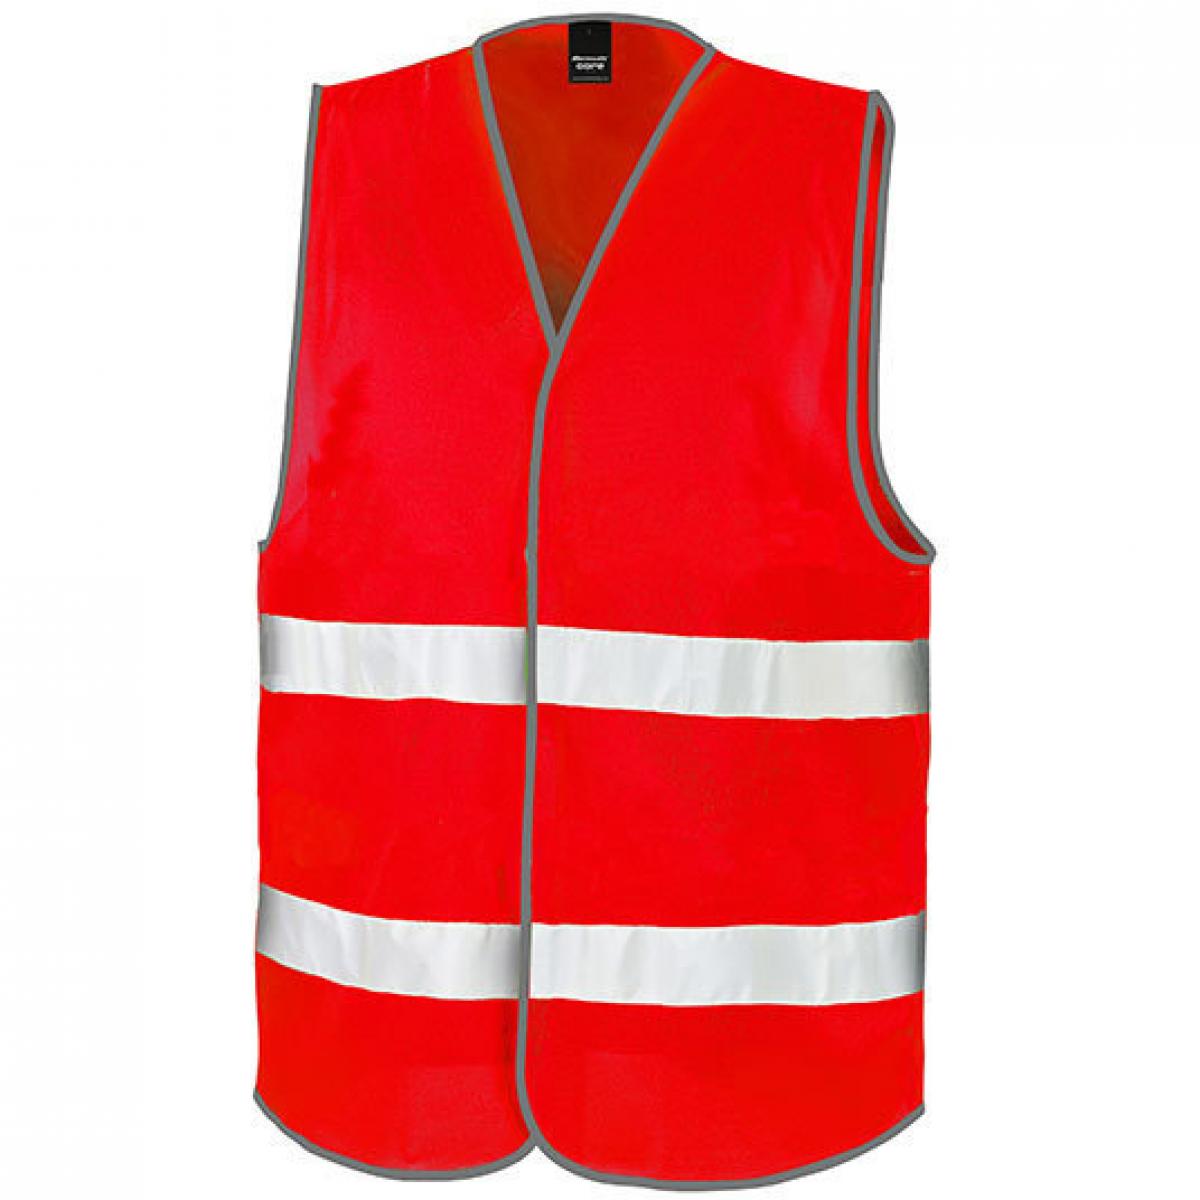 Hersteller: Result Core Herstellernummer: R200X Artikelbezeichnung: Motorist Safety Vest / ISOEN20471:2013, Klasse 2 Farbe: Red